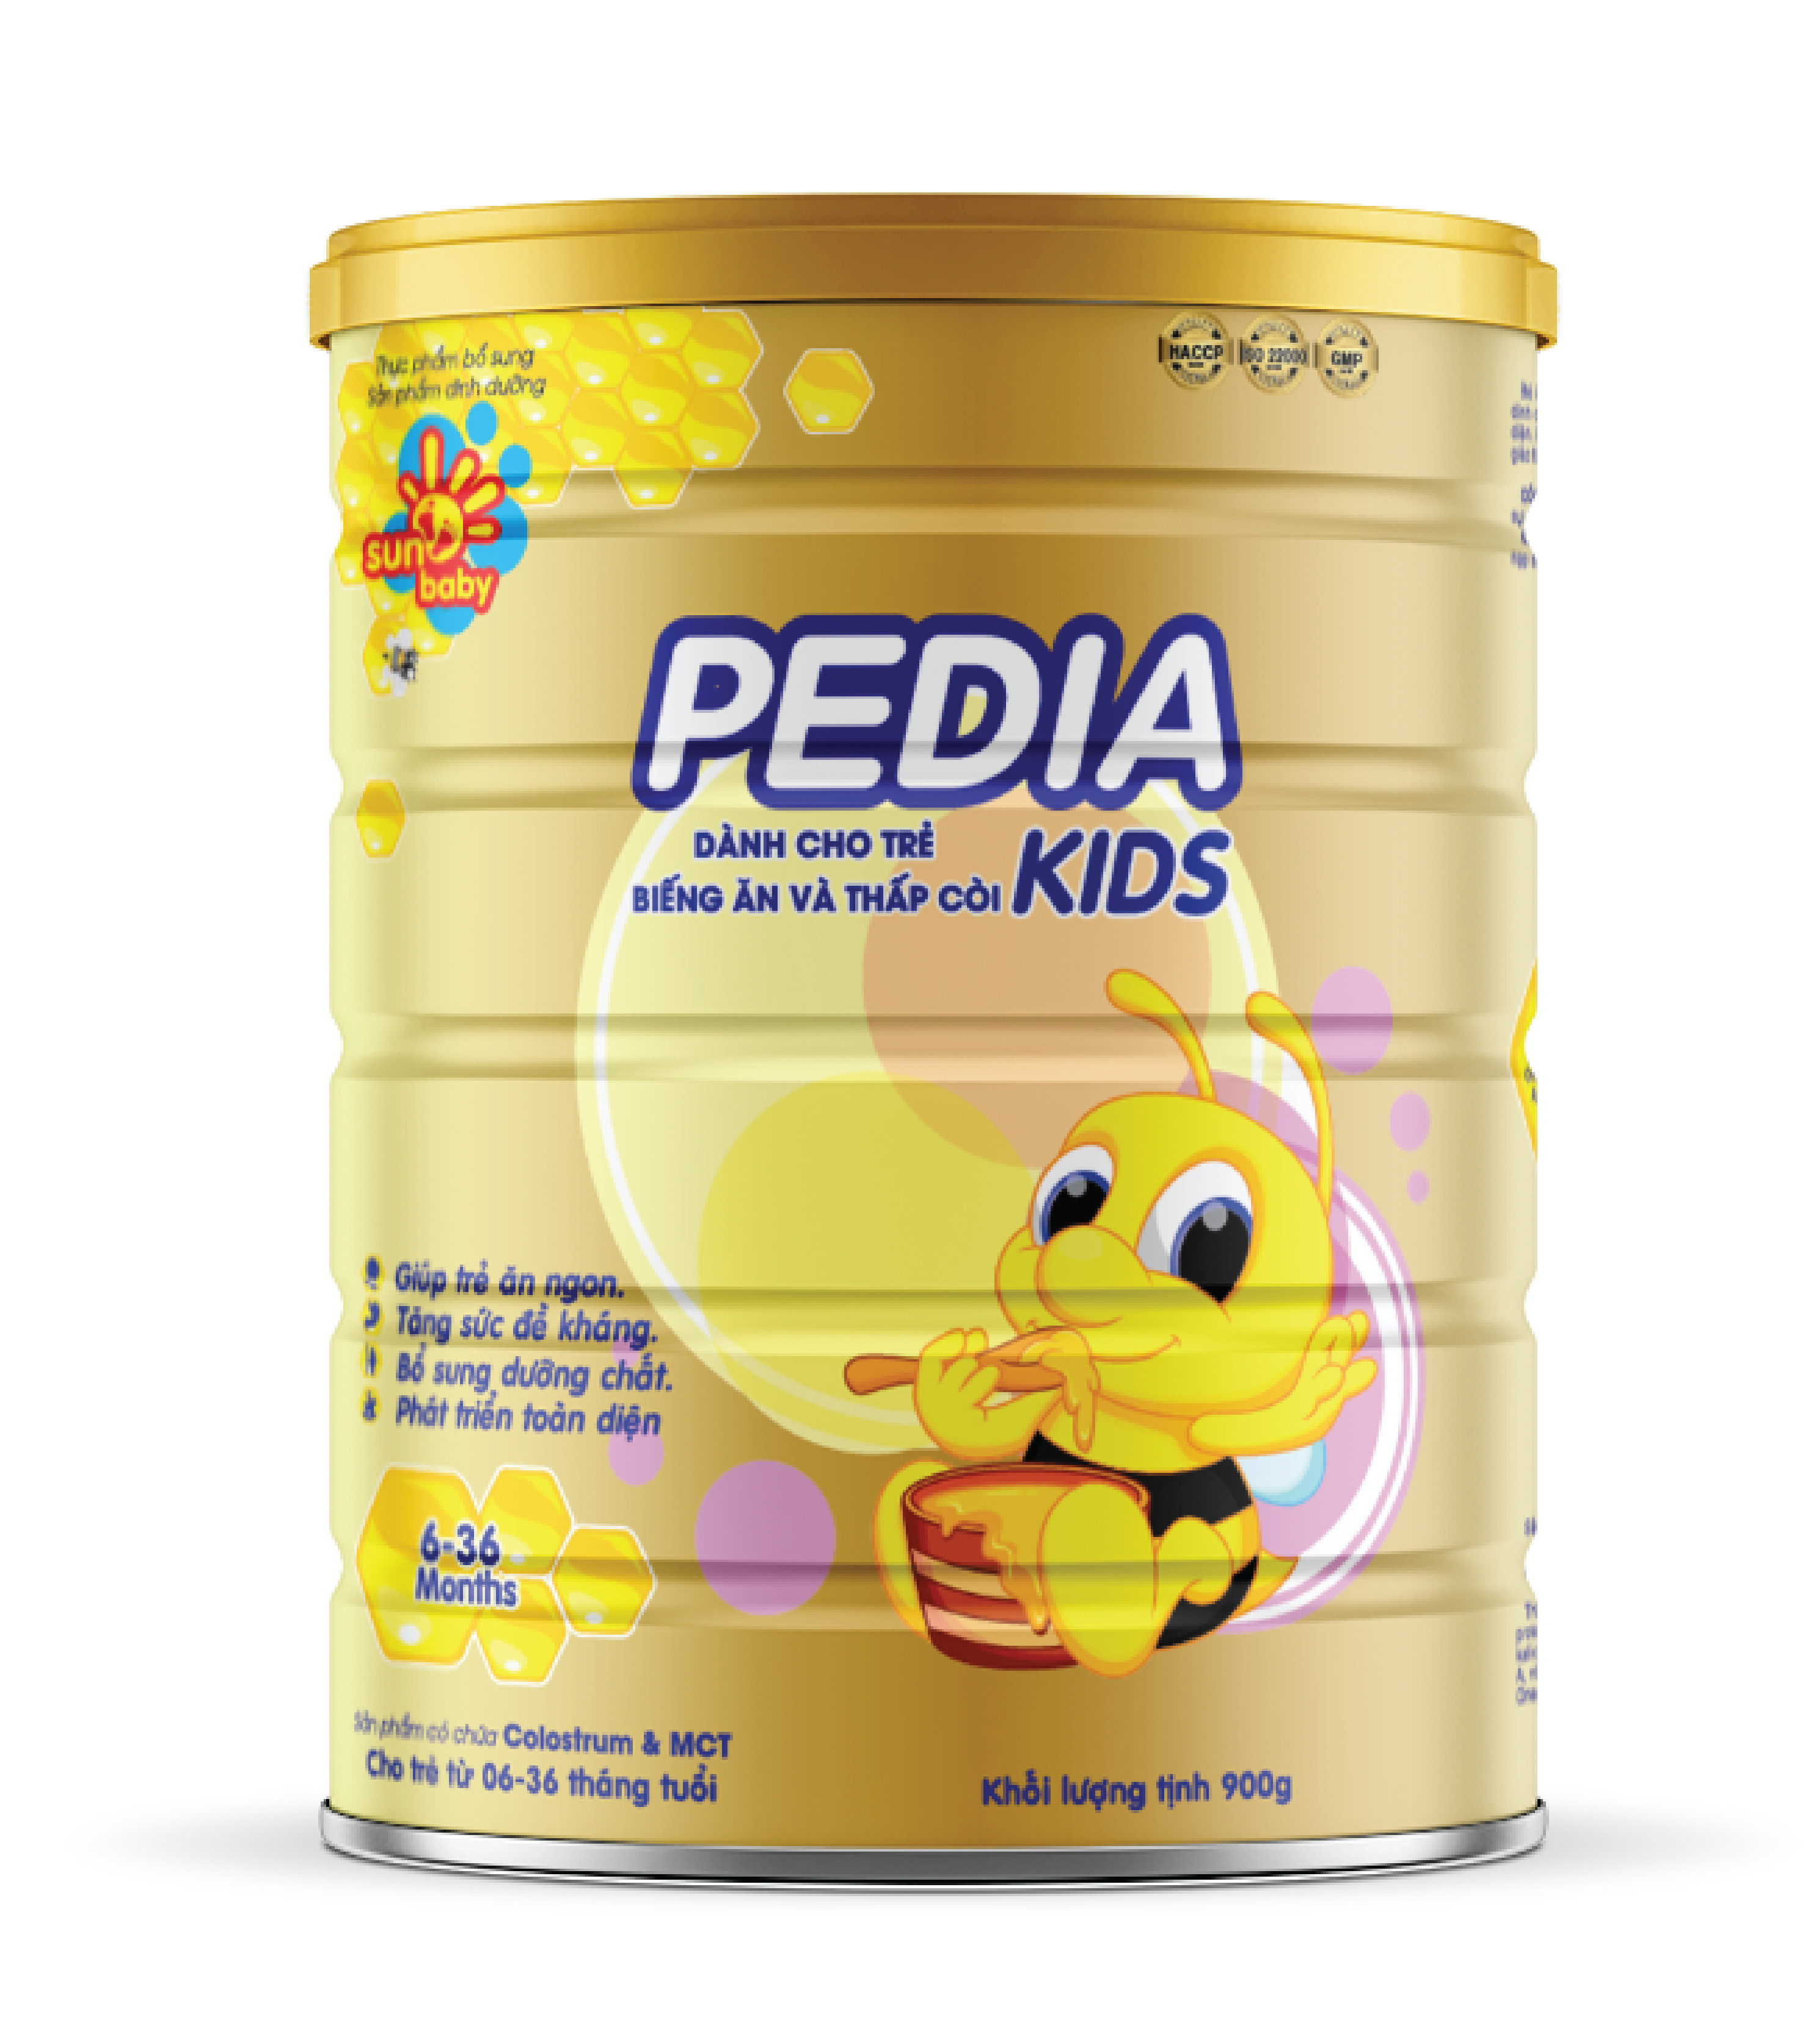 [Tặng 5 bộ body chip] Sữa Pedia Kids cho trẻ biếng ăn thấp còi 900g Sunbaby